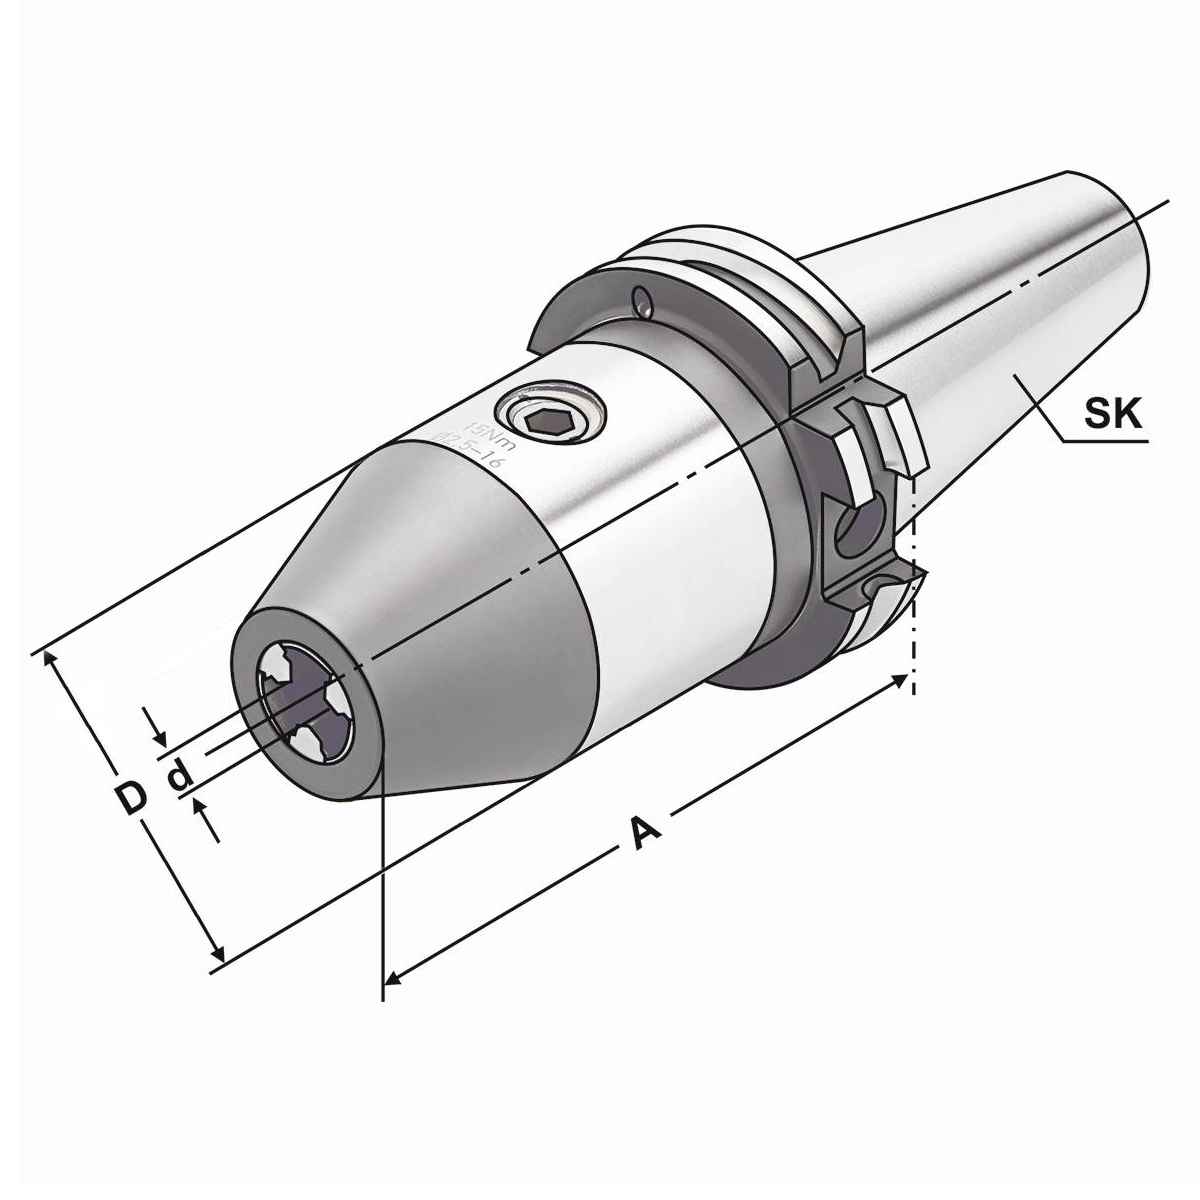 CNC-Bohrfutter SK 40-0,5/8-70 DIN 69871 AD